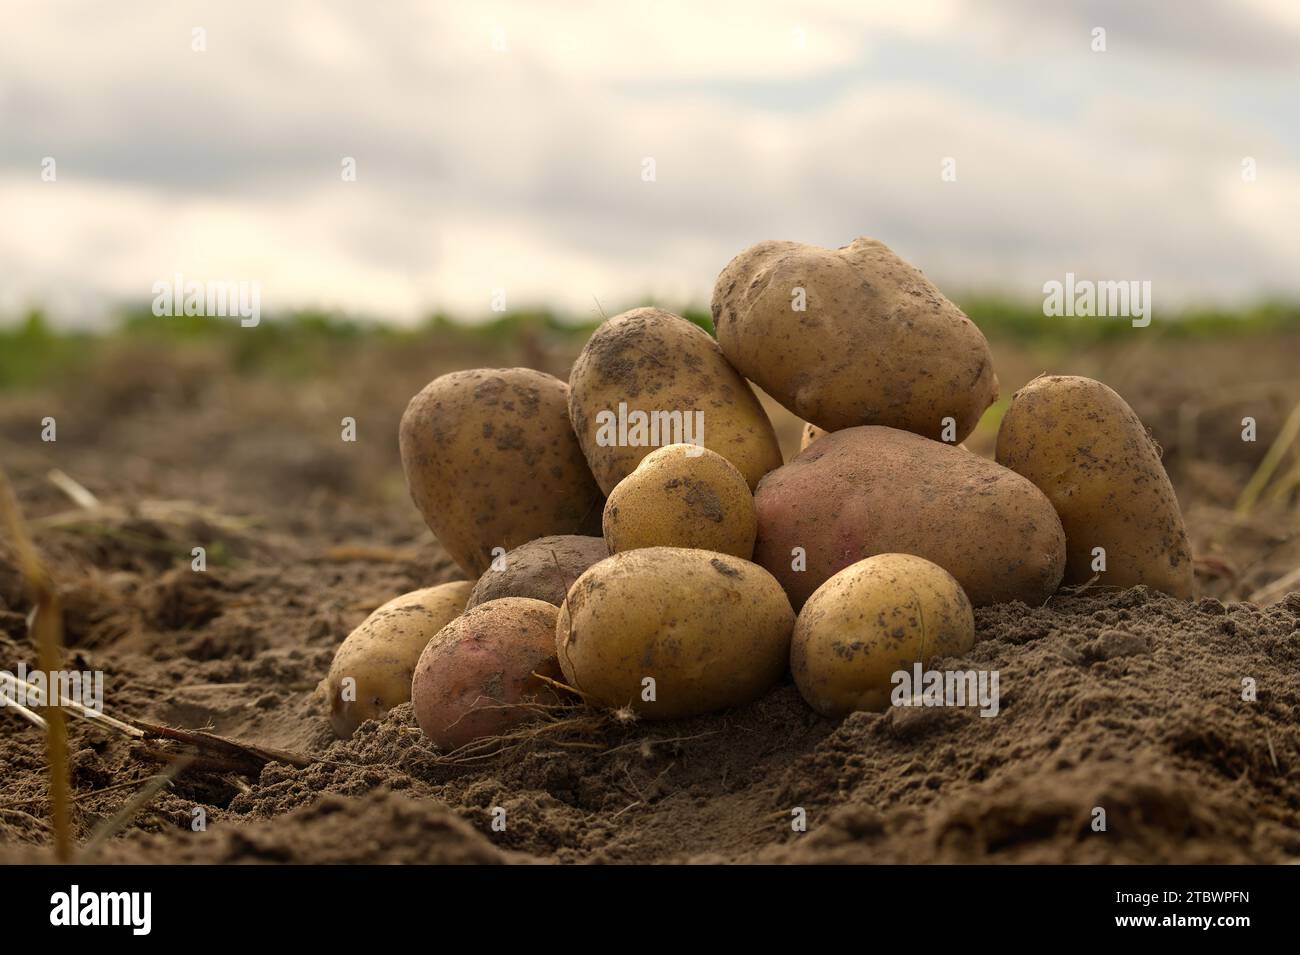 Haufen von frisch gegrabenen oder geernteten Kartoffeln in einem niedrigen Winkel Blick auf reiche braune Erde in einem Konzept des Lebensmittelanbaus Stockfoto